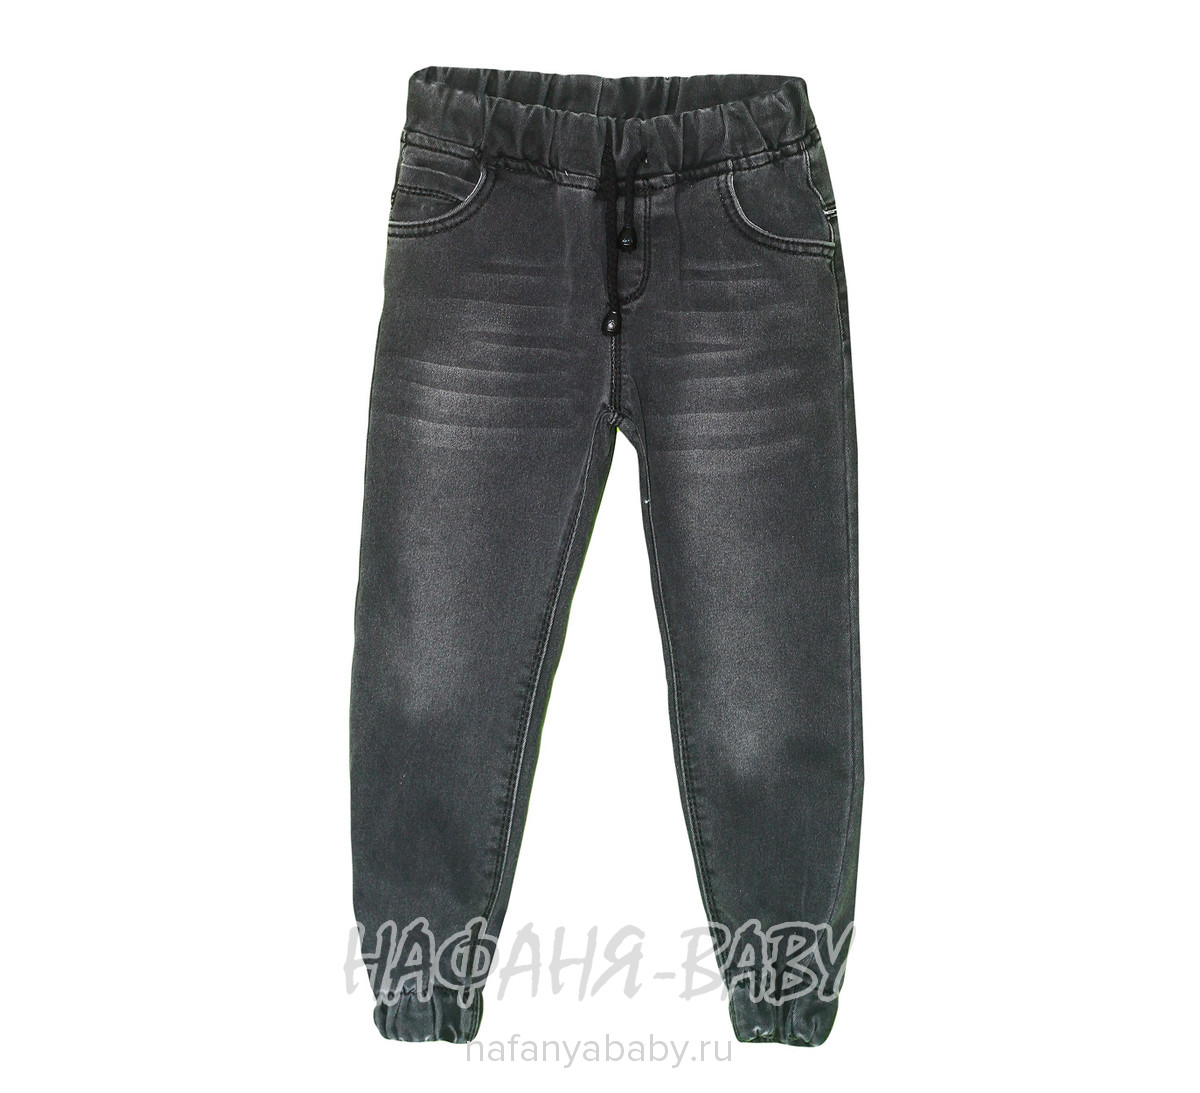 Подростковые джинсы TATI Jeans арт: 1893, 10-15 лет, 5-9 лет, оптом Турция